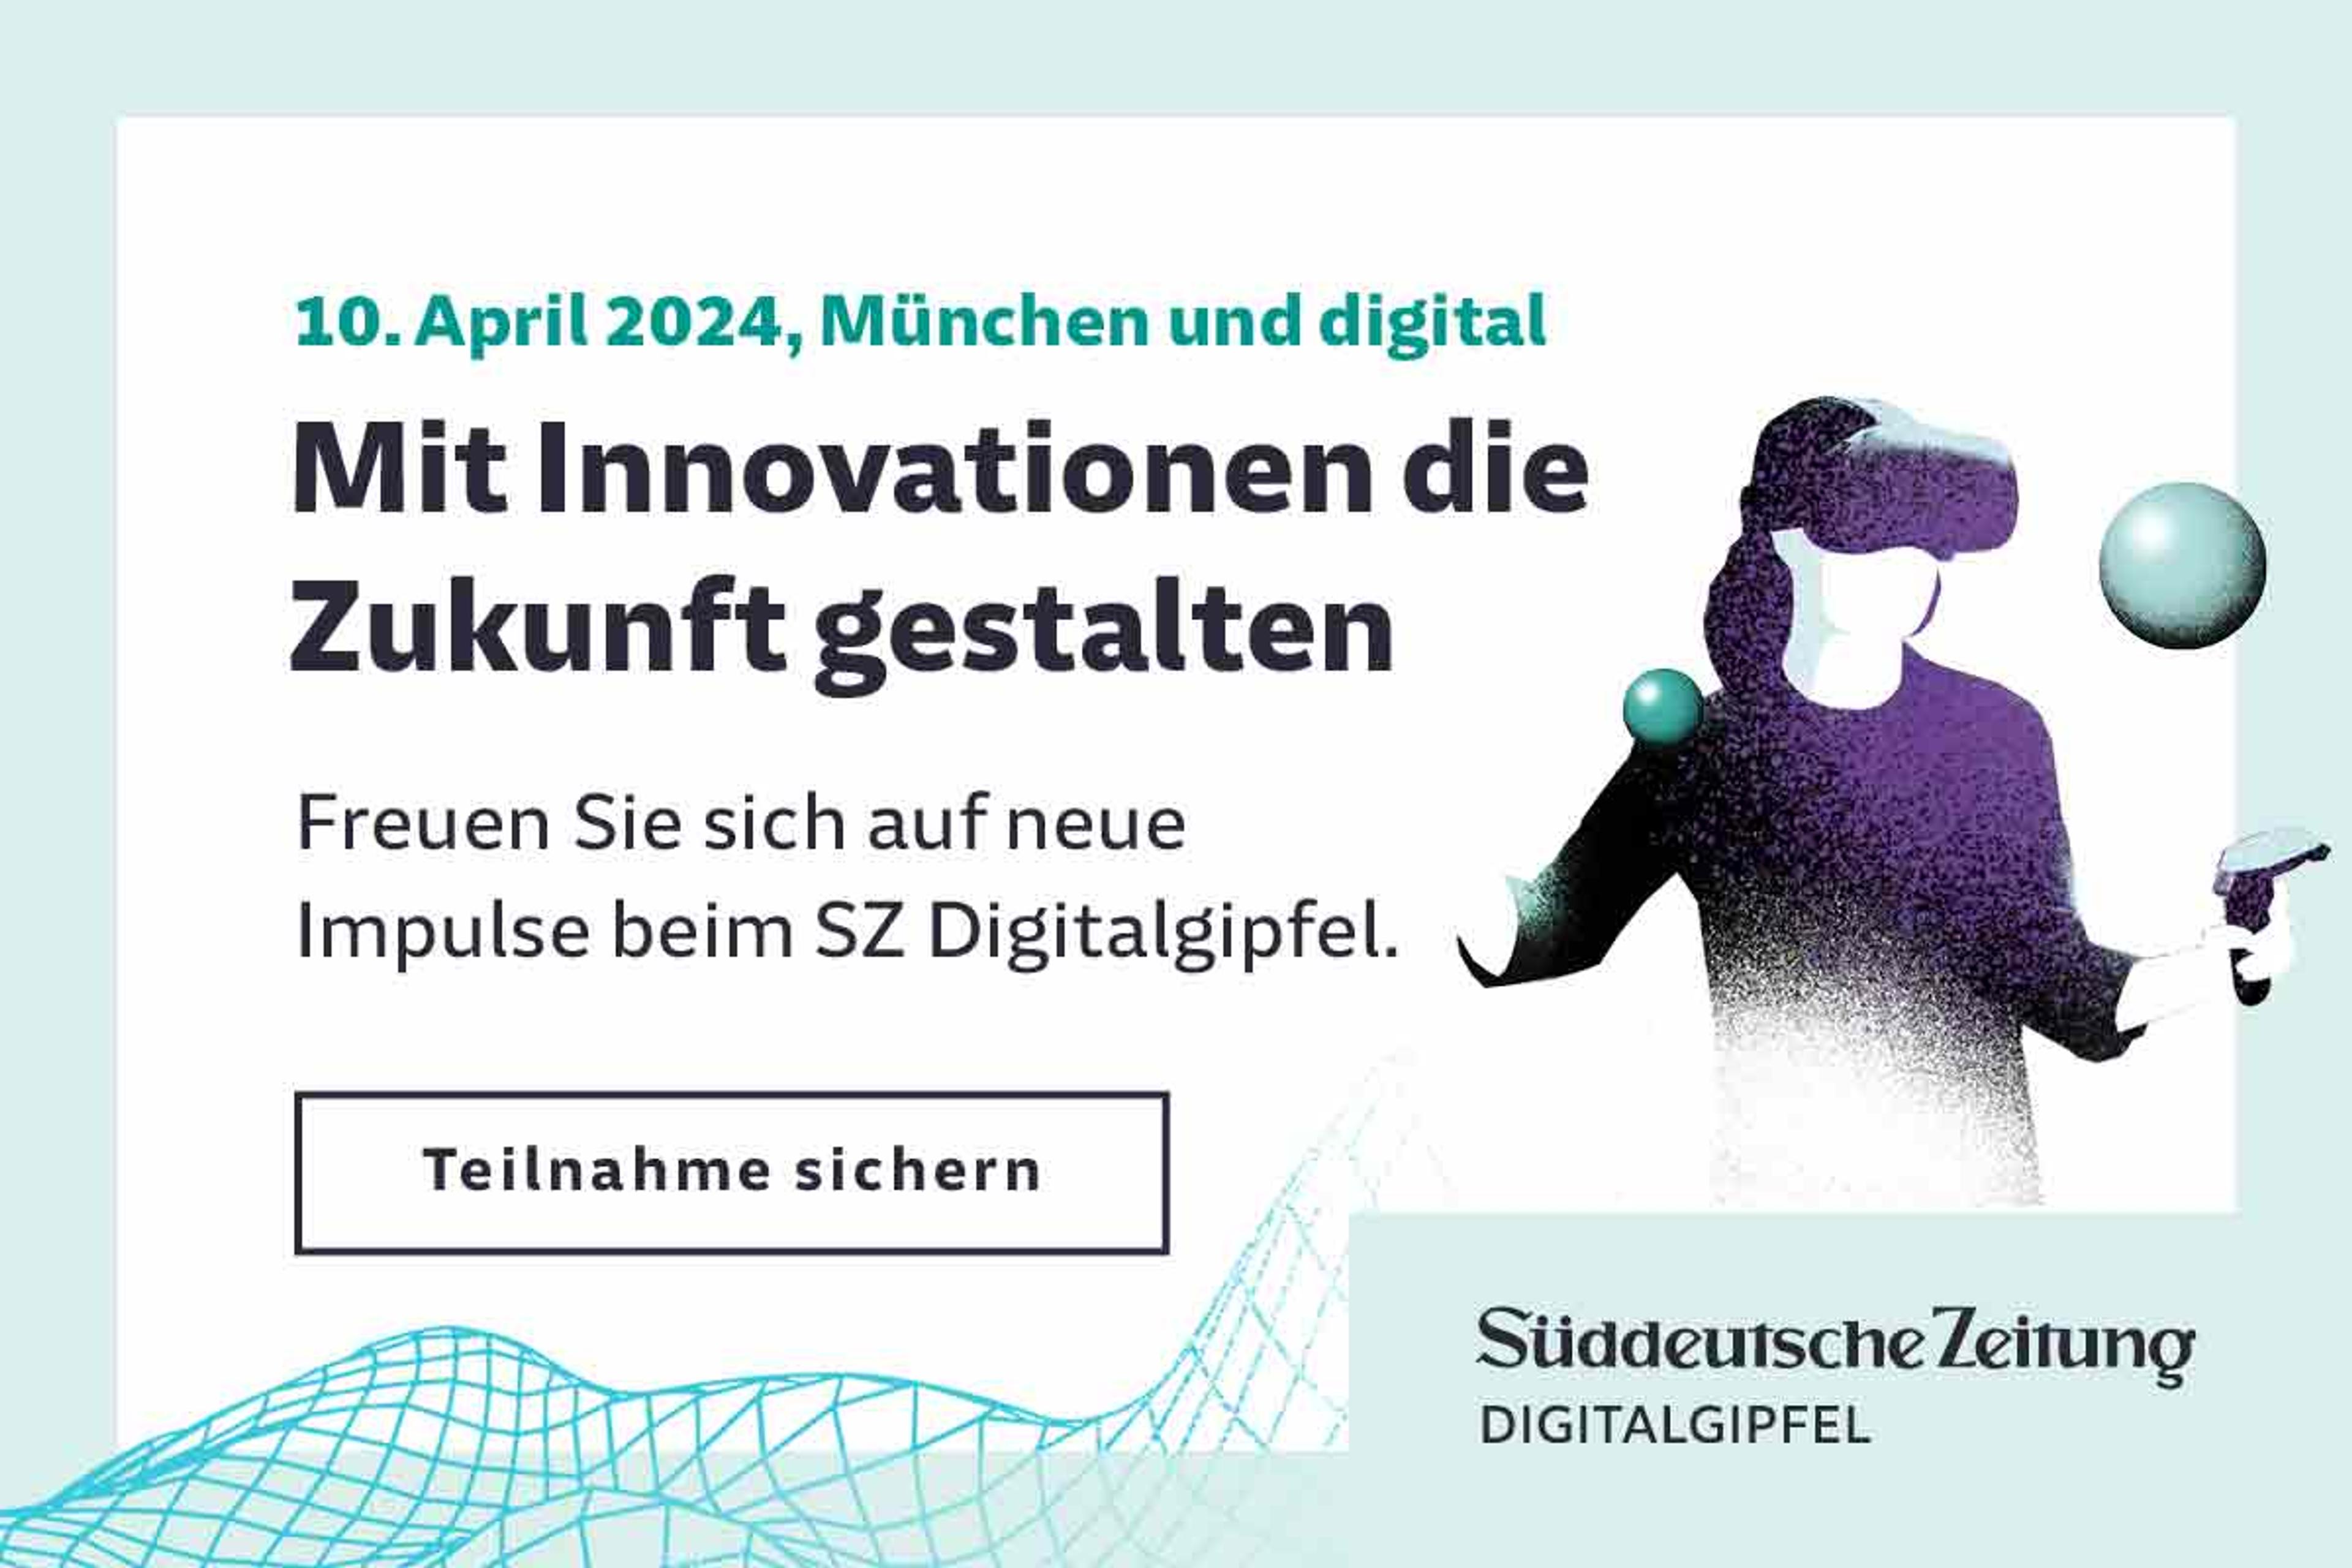 Süddeutsche Zeitung Digitalgipfel